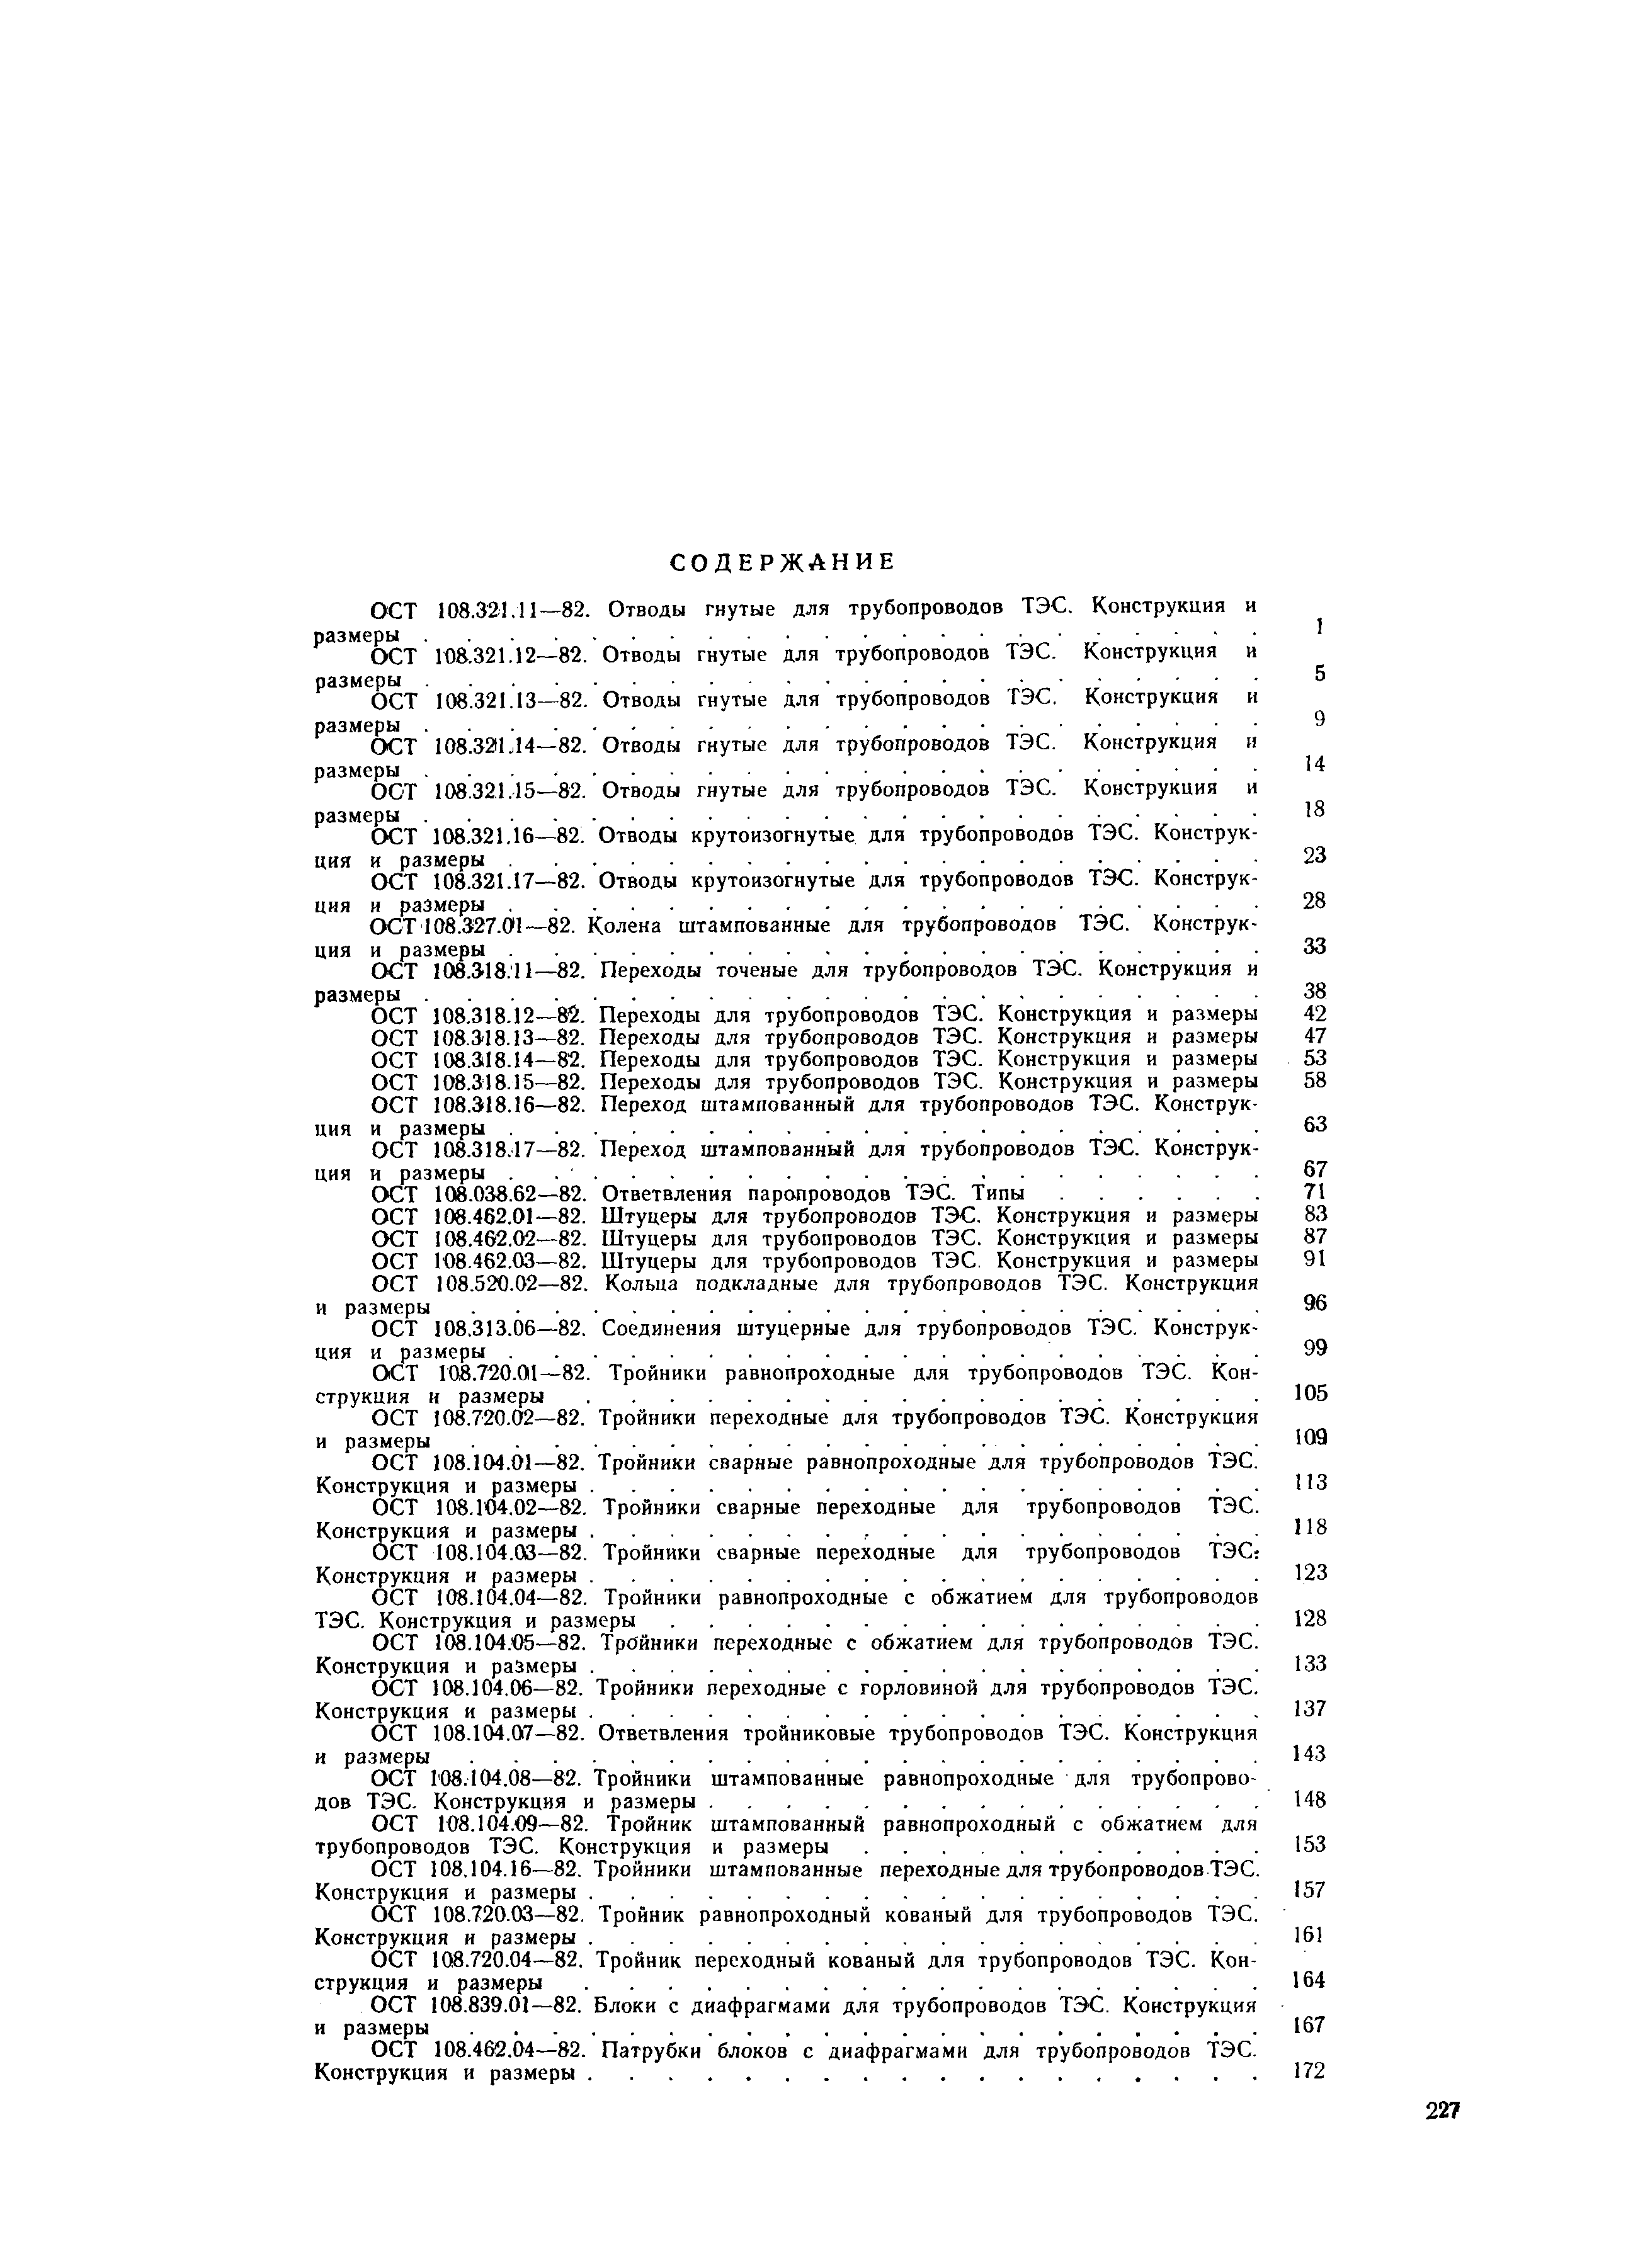 ОСТ 108.321.15-82